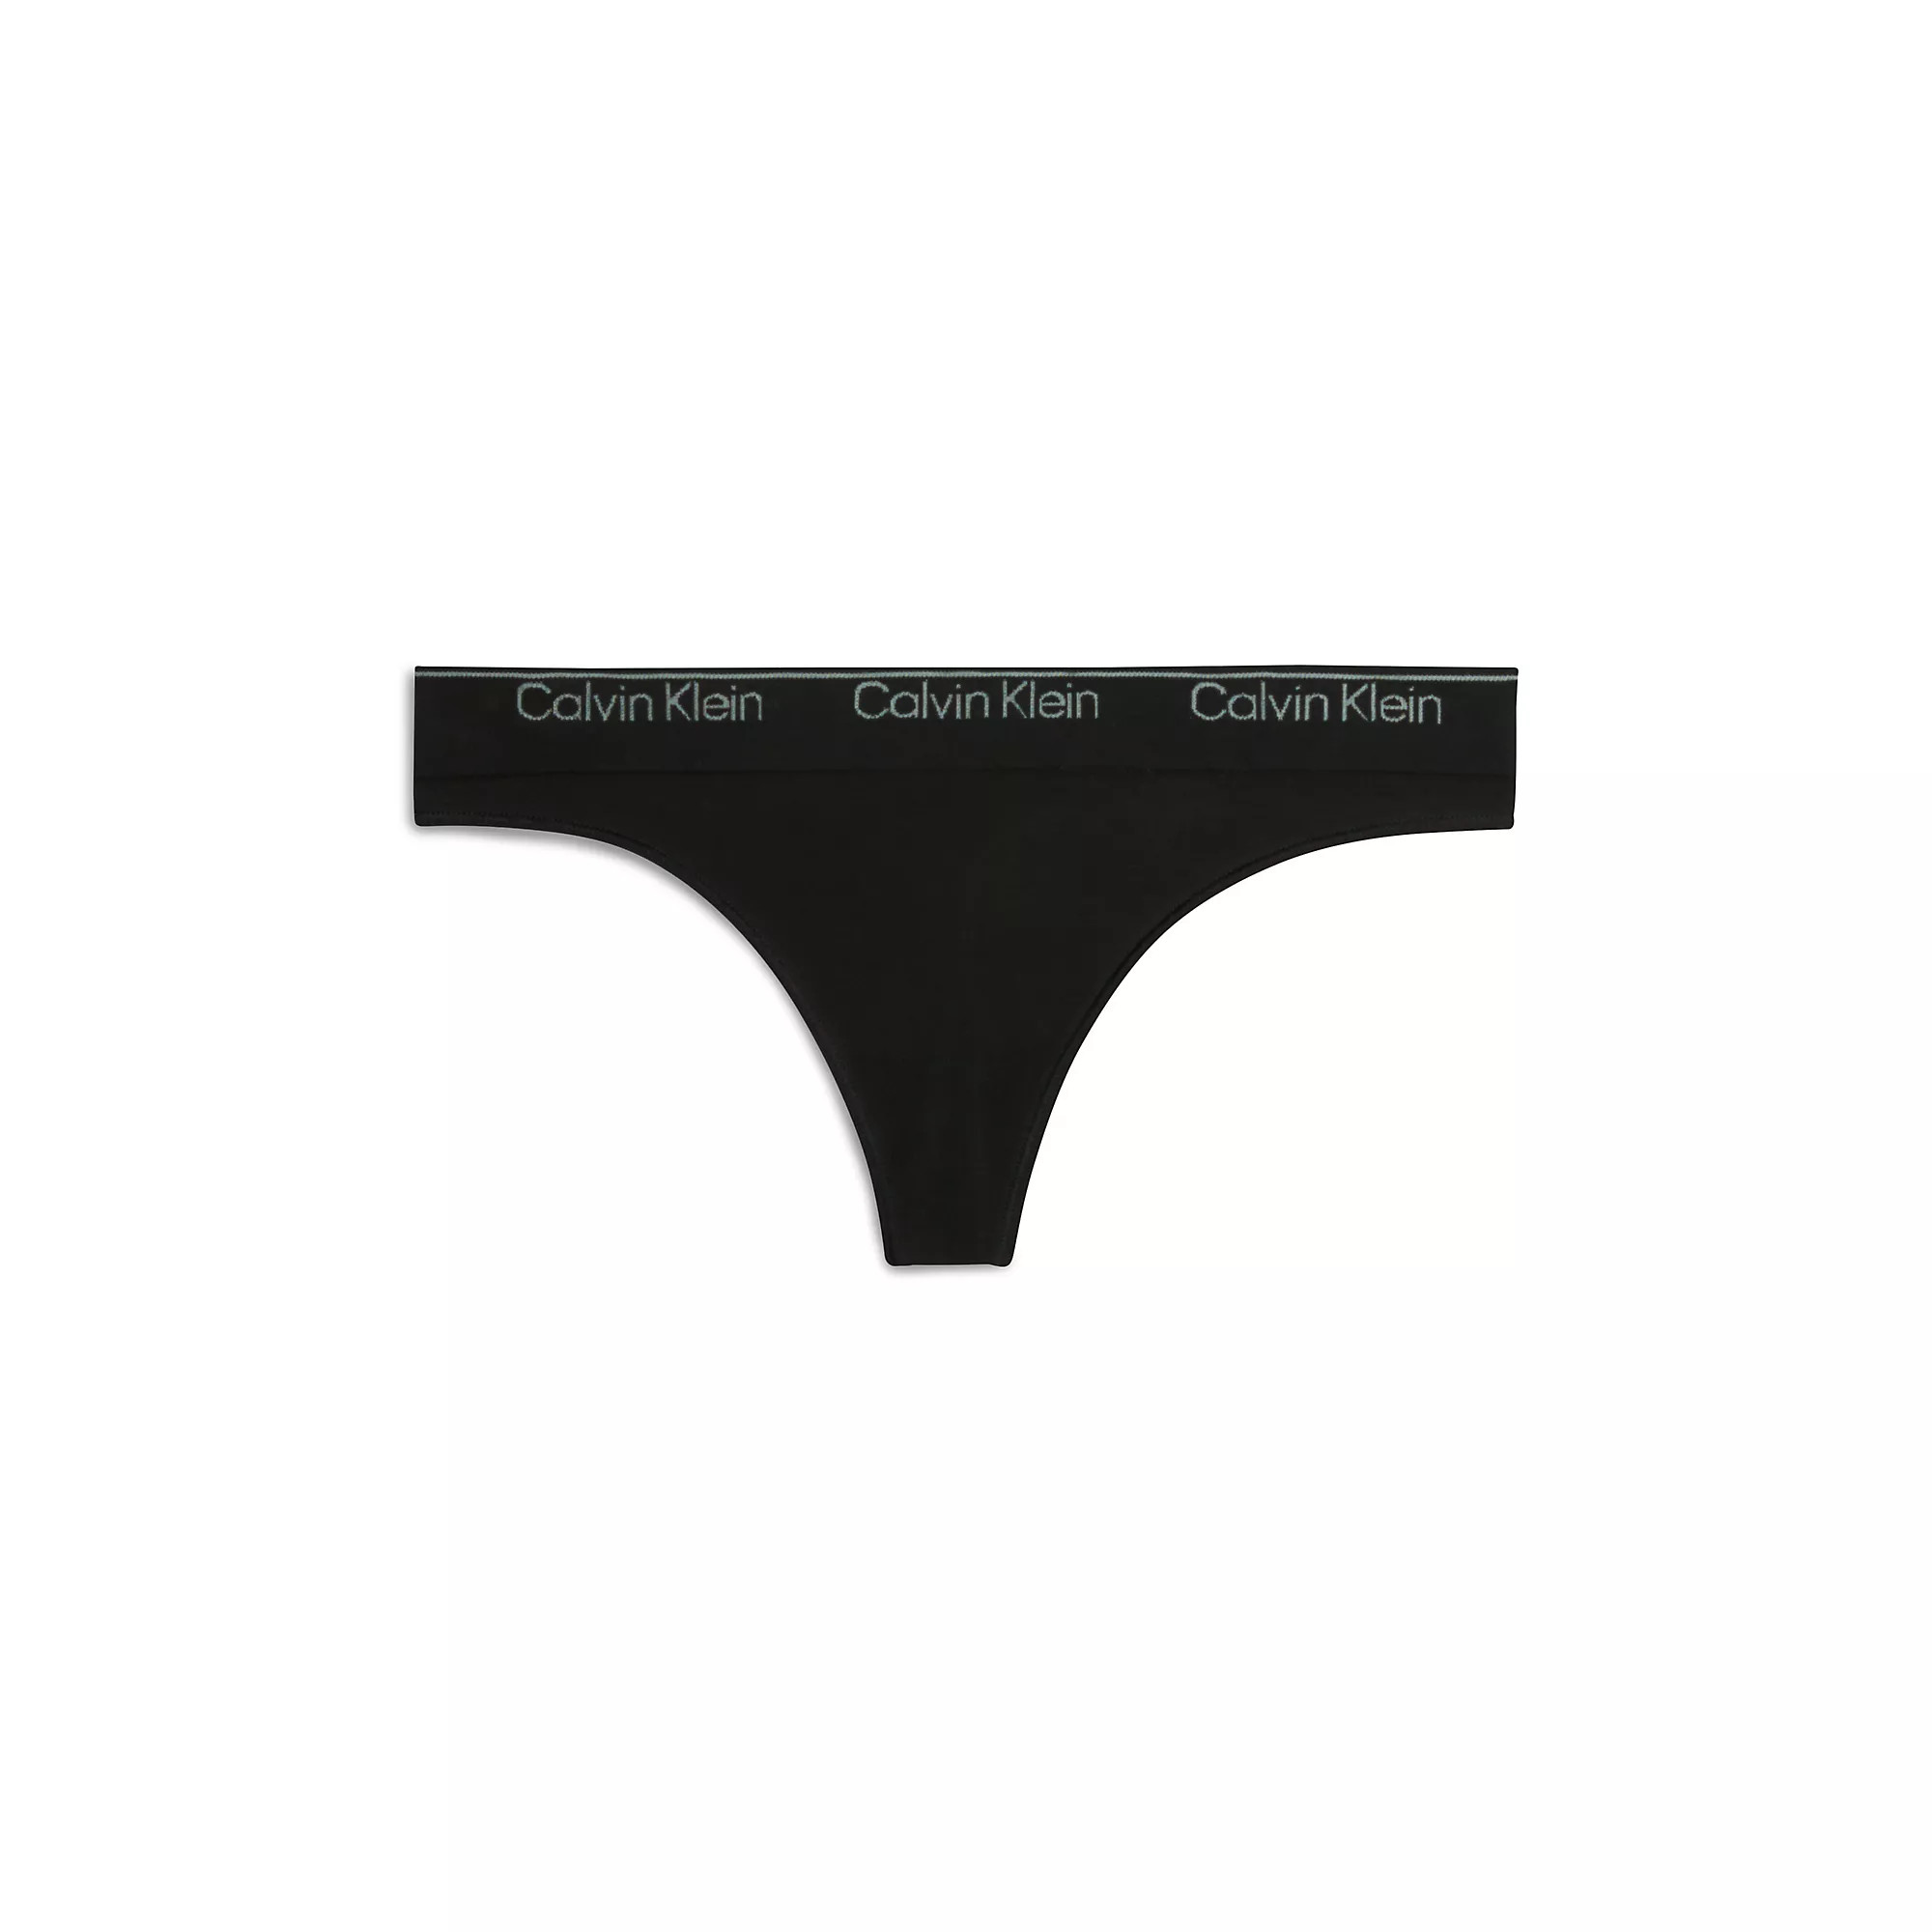 Spodní prádlo Dámské kalhotky THONG 000QF7095EUB1 - Calvin Klein S